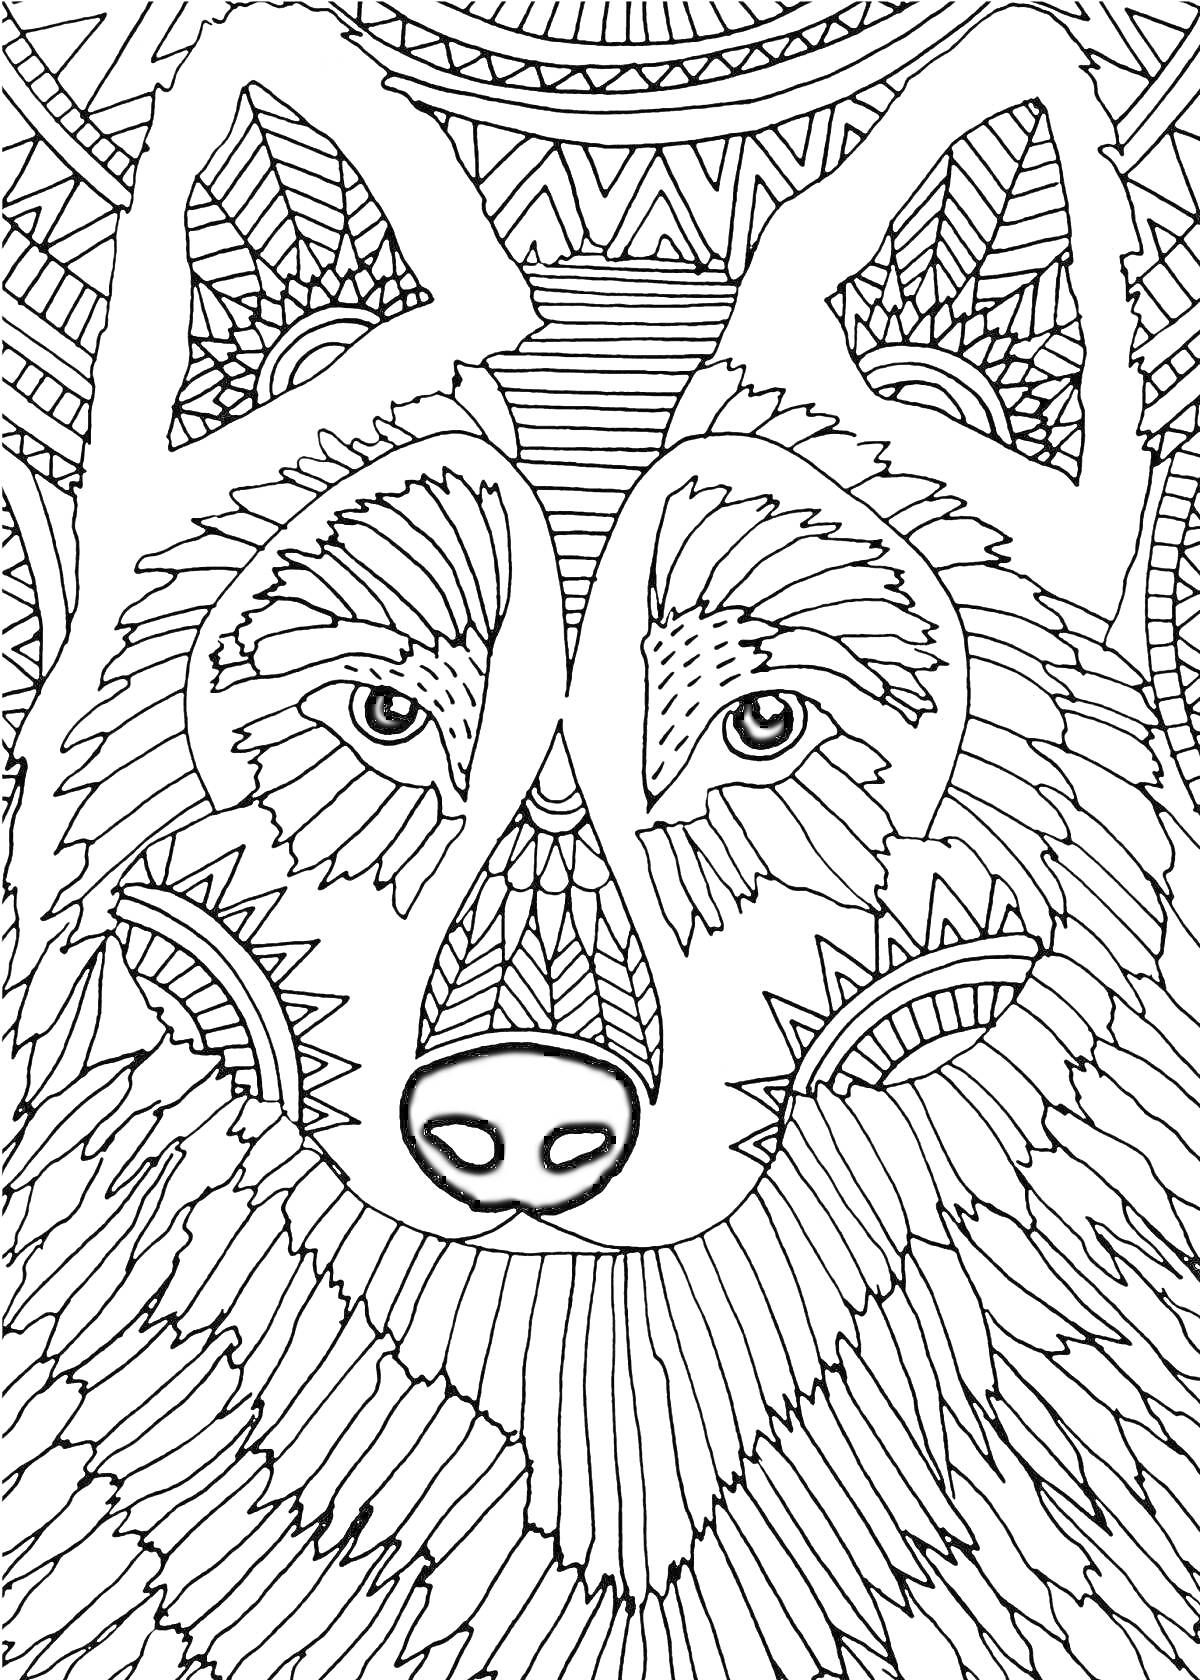 Раскраска Волк в геометрическом стиле